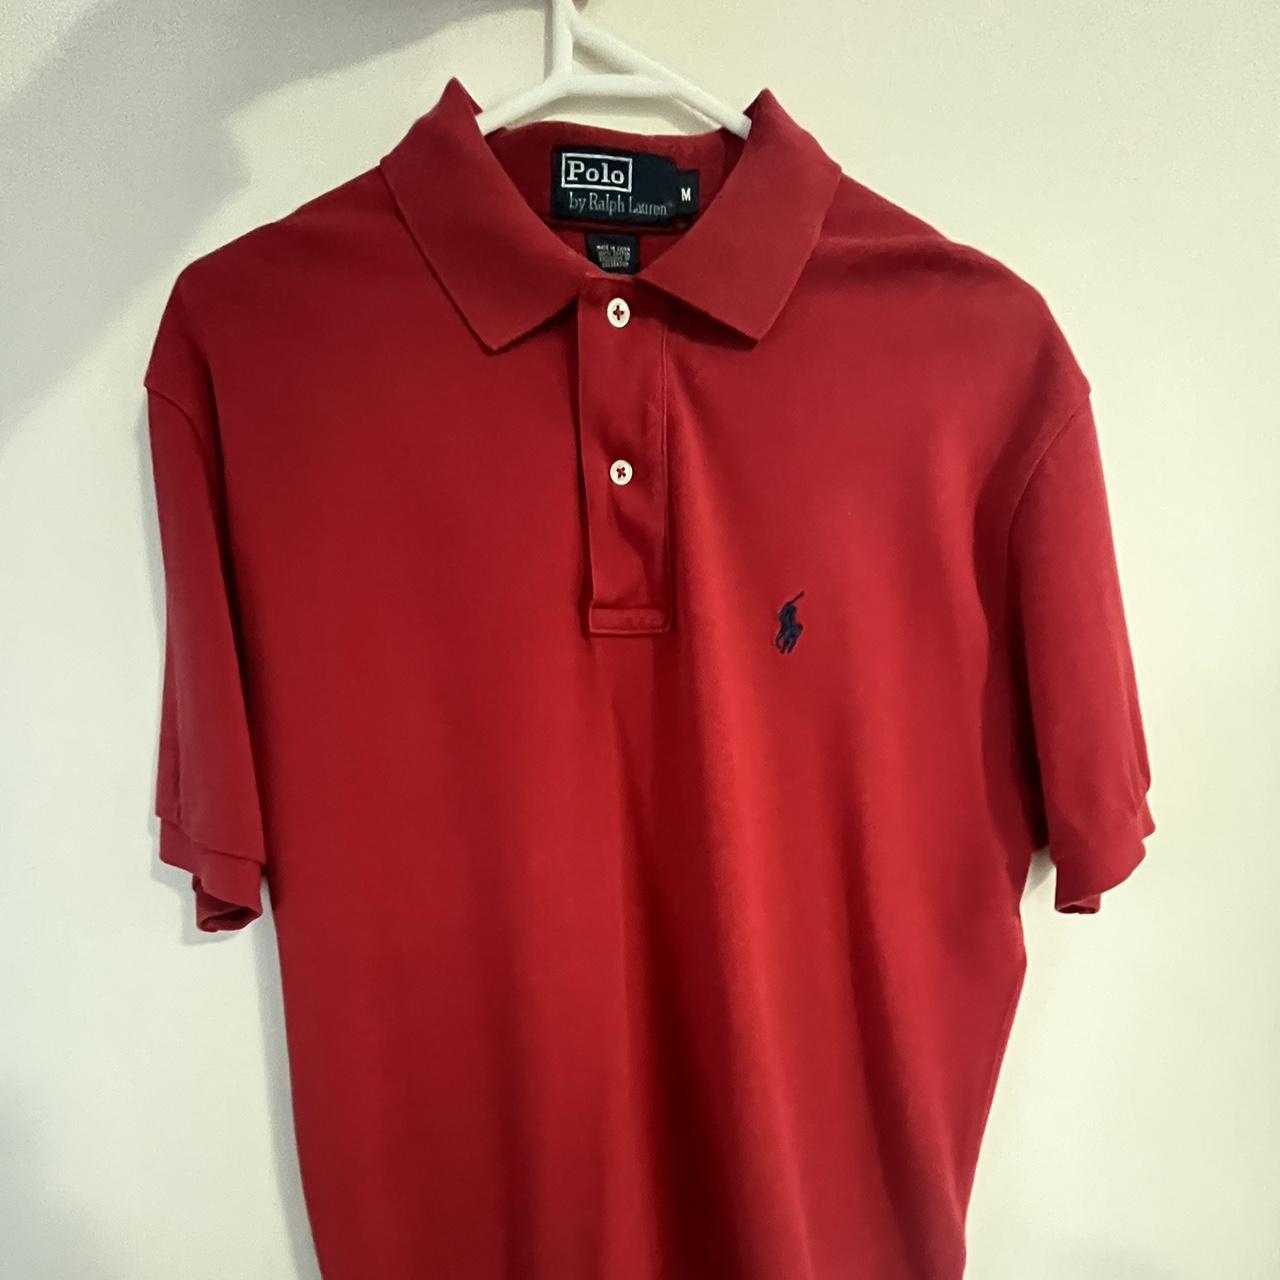 Ralph Lauren Polo T-shirt Red Size:... - Depop